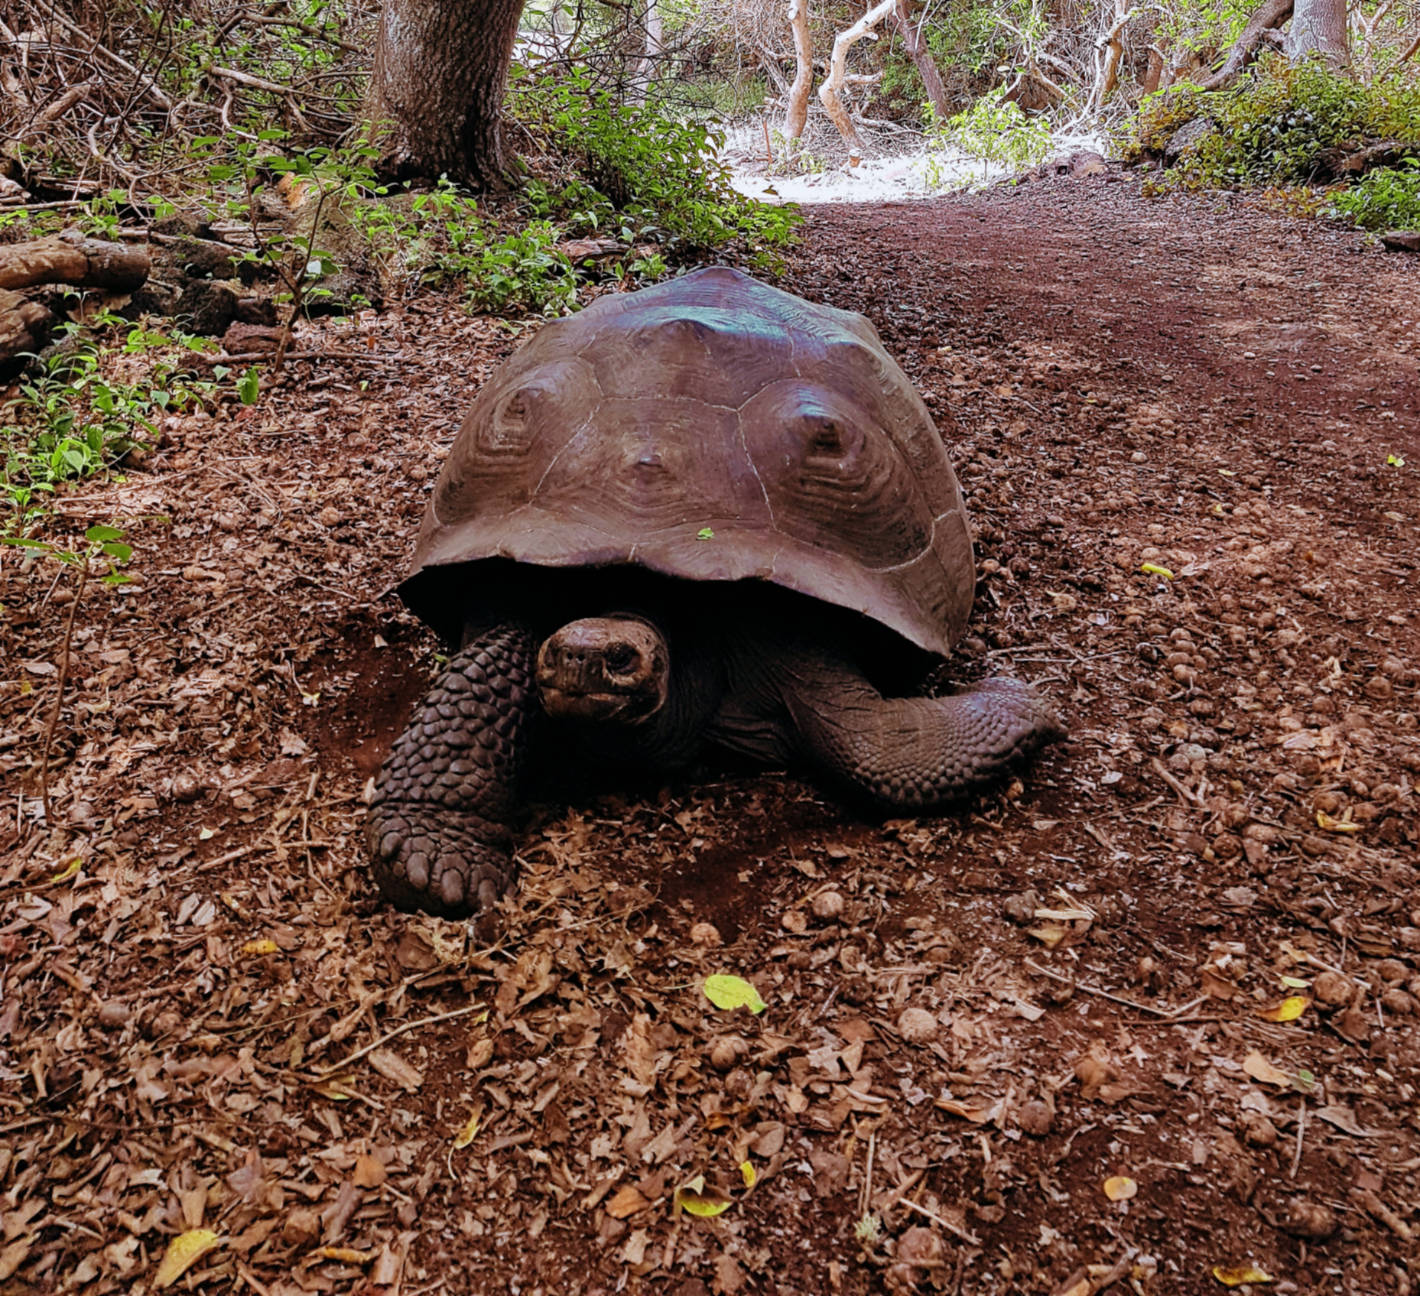 Jak tanio zwiedzić Wyspy Galapagos Darmowe atrakcje na wyspach (8)